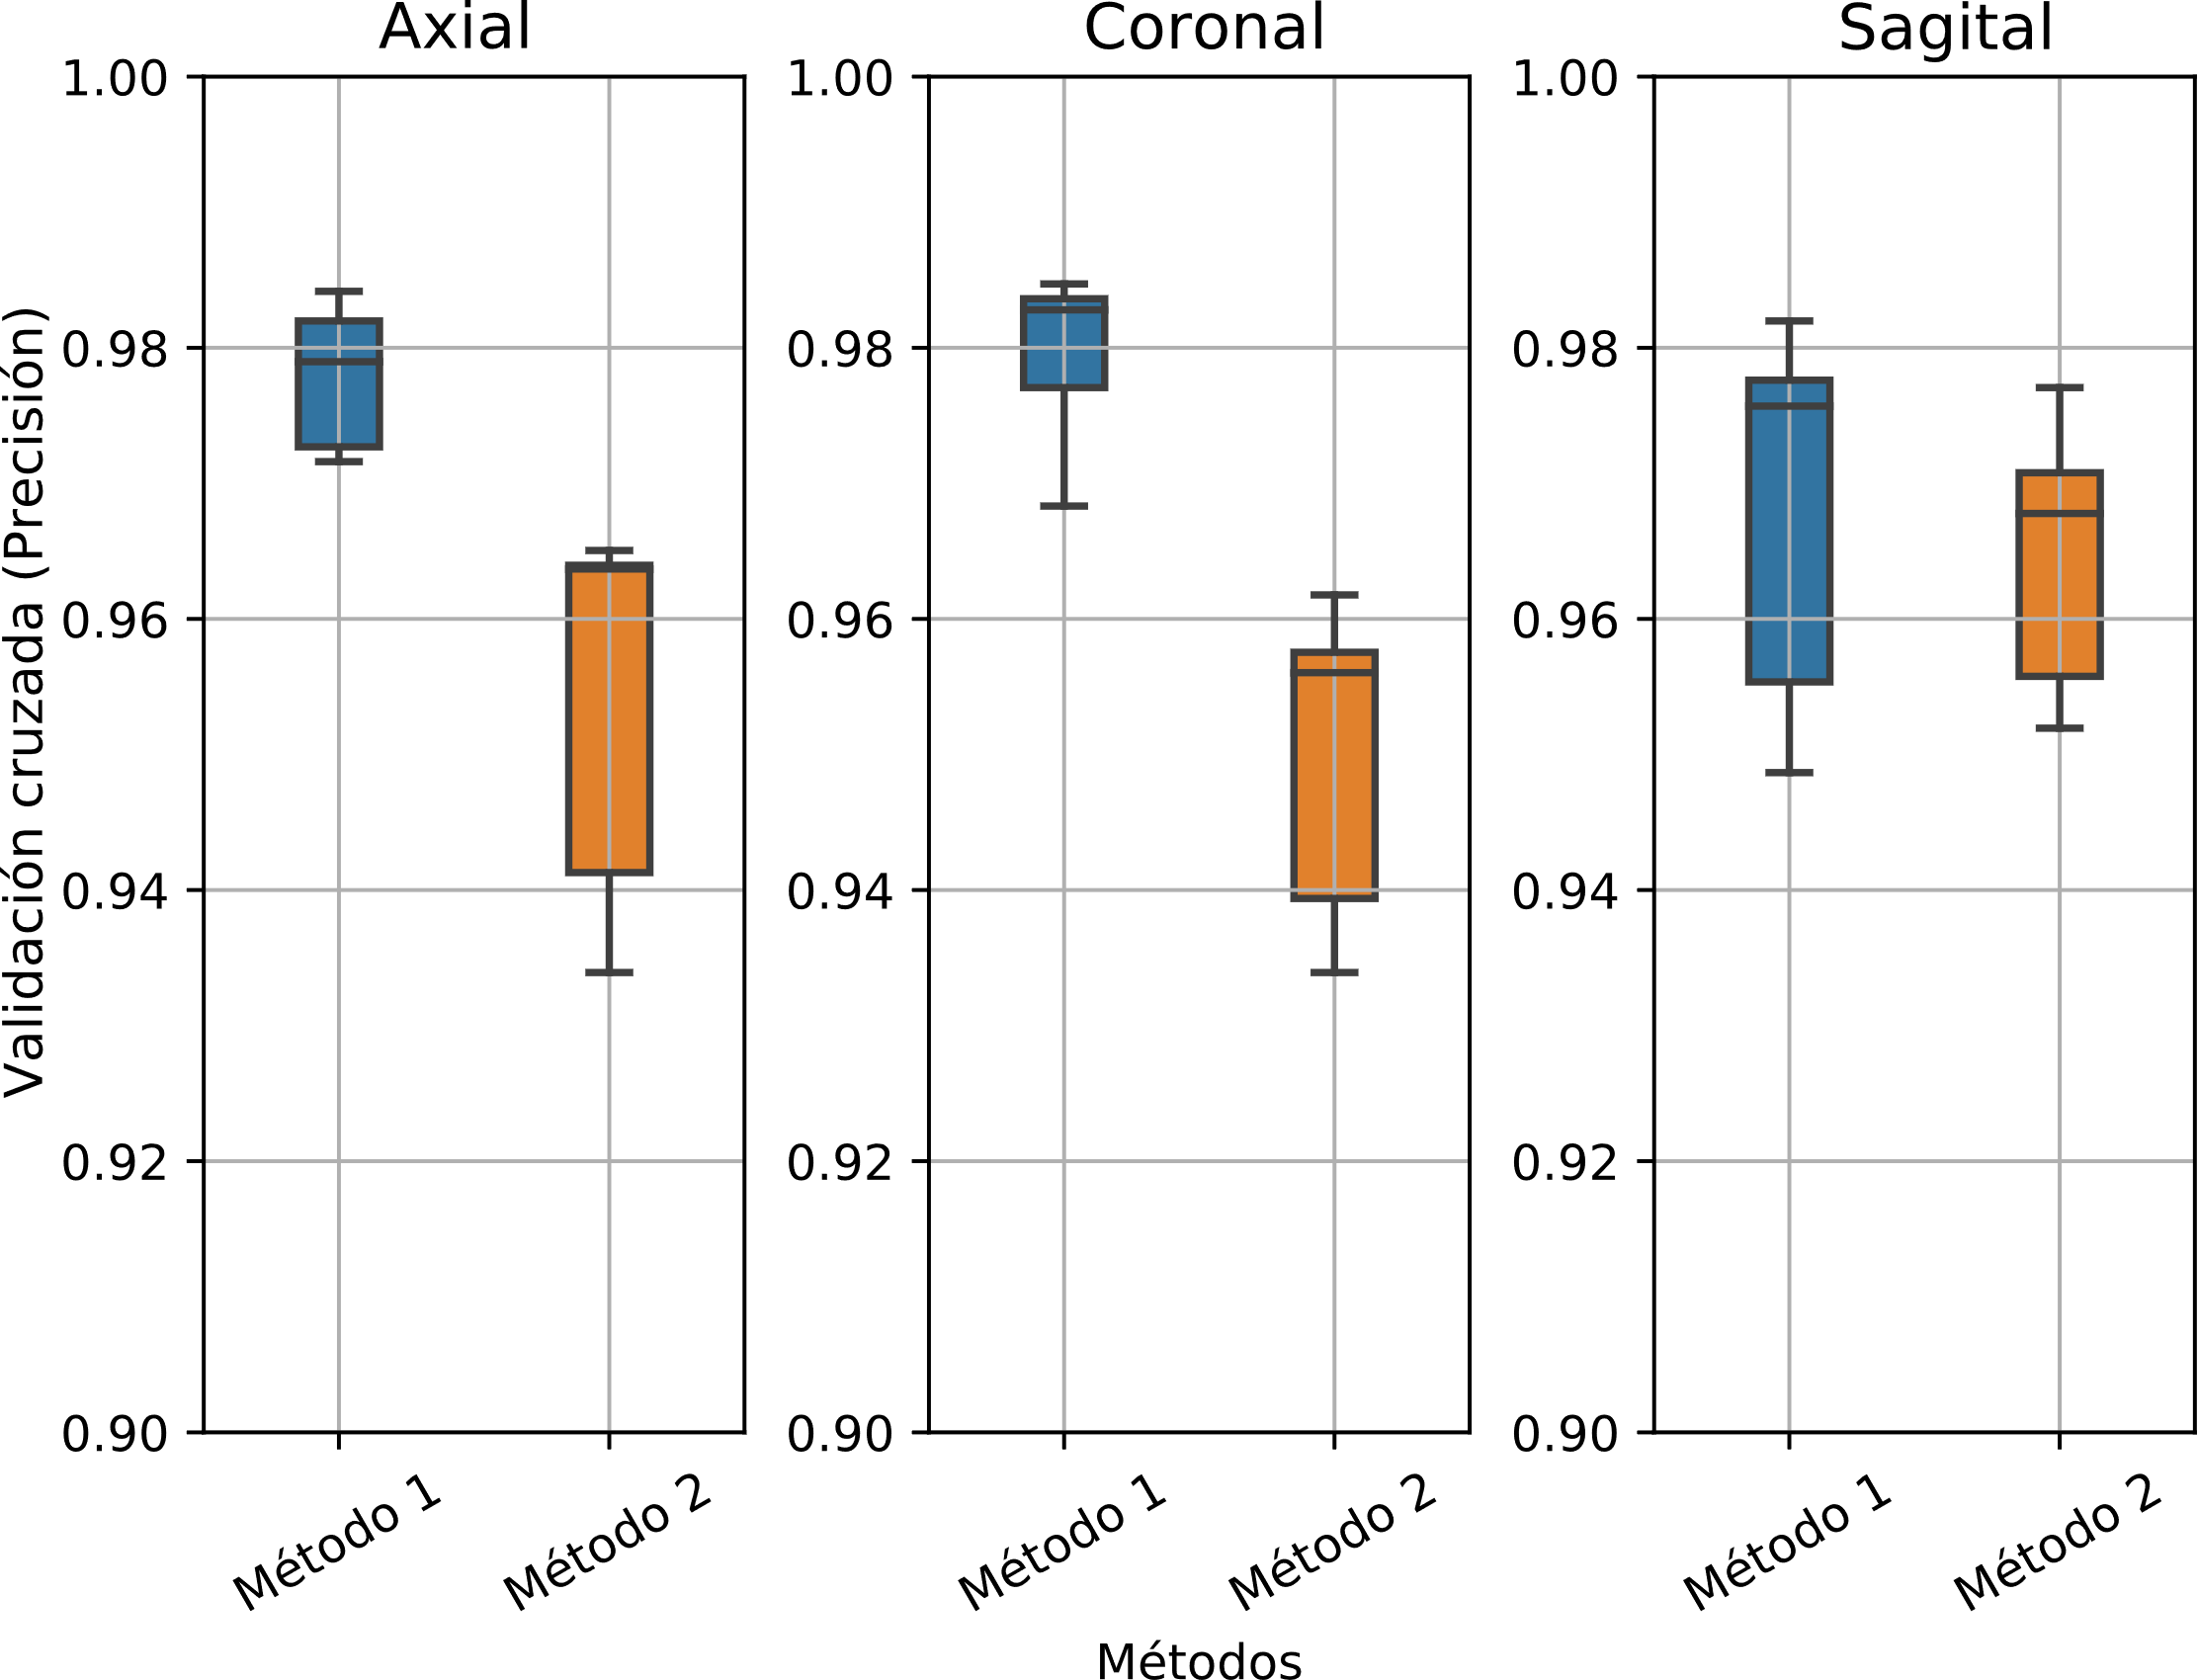 Gráfica de cajas y bigotes con los datos de entrenamiento. Precisión de los seis modelos en función de los dos métodos de reducción de volúmenes para las imágenes axial, coronal y sagital